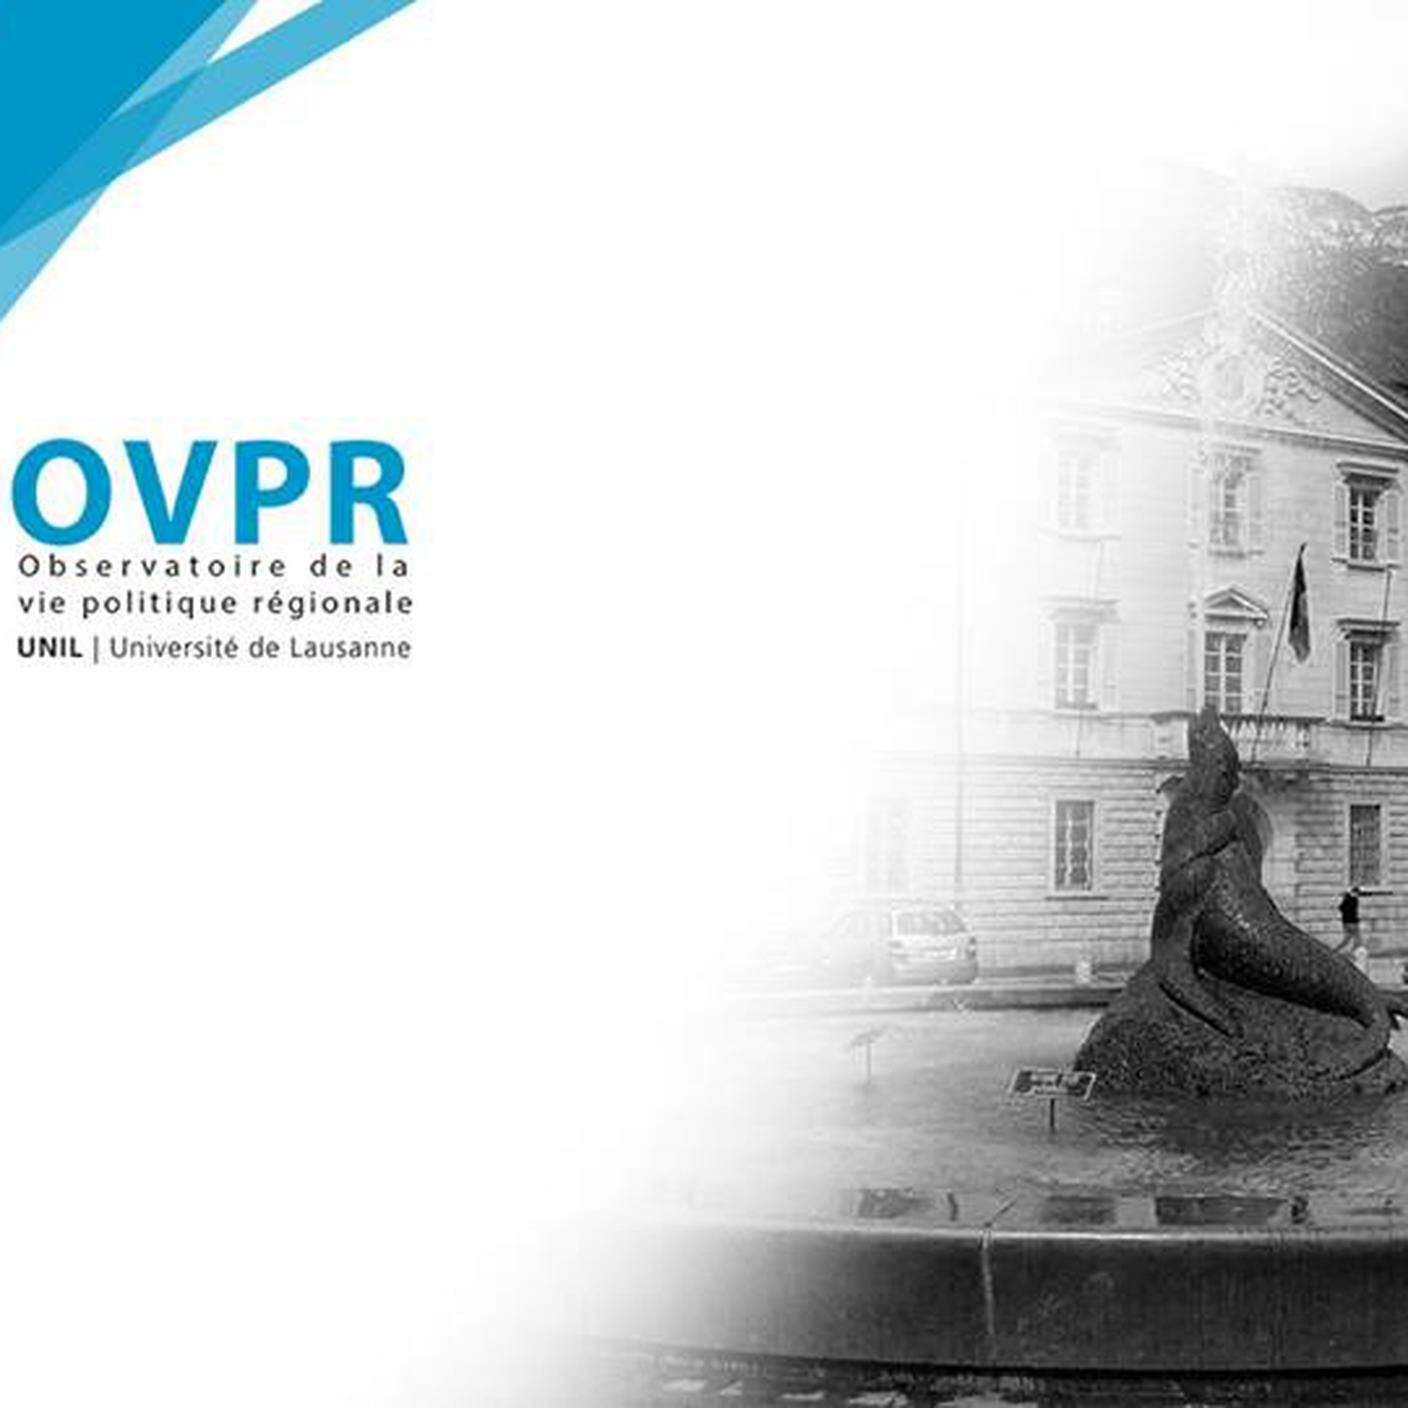 OVPR, Osservatorio della vita politica regionale